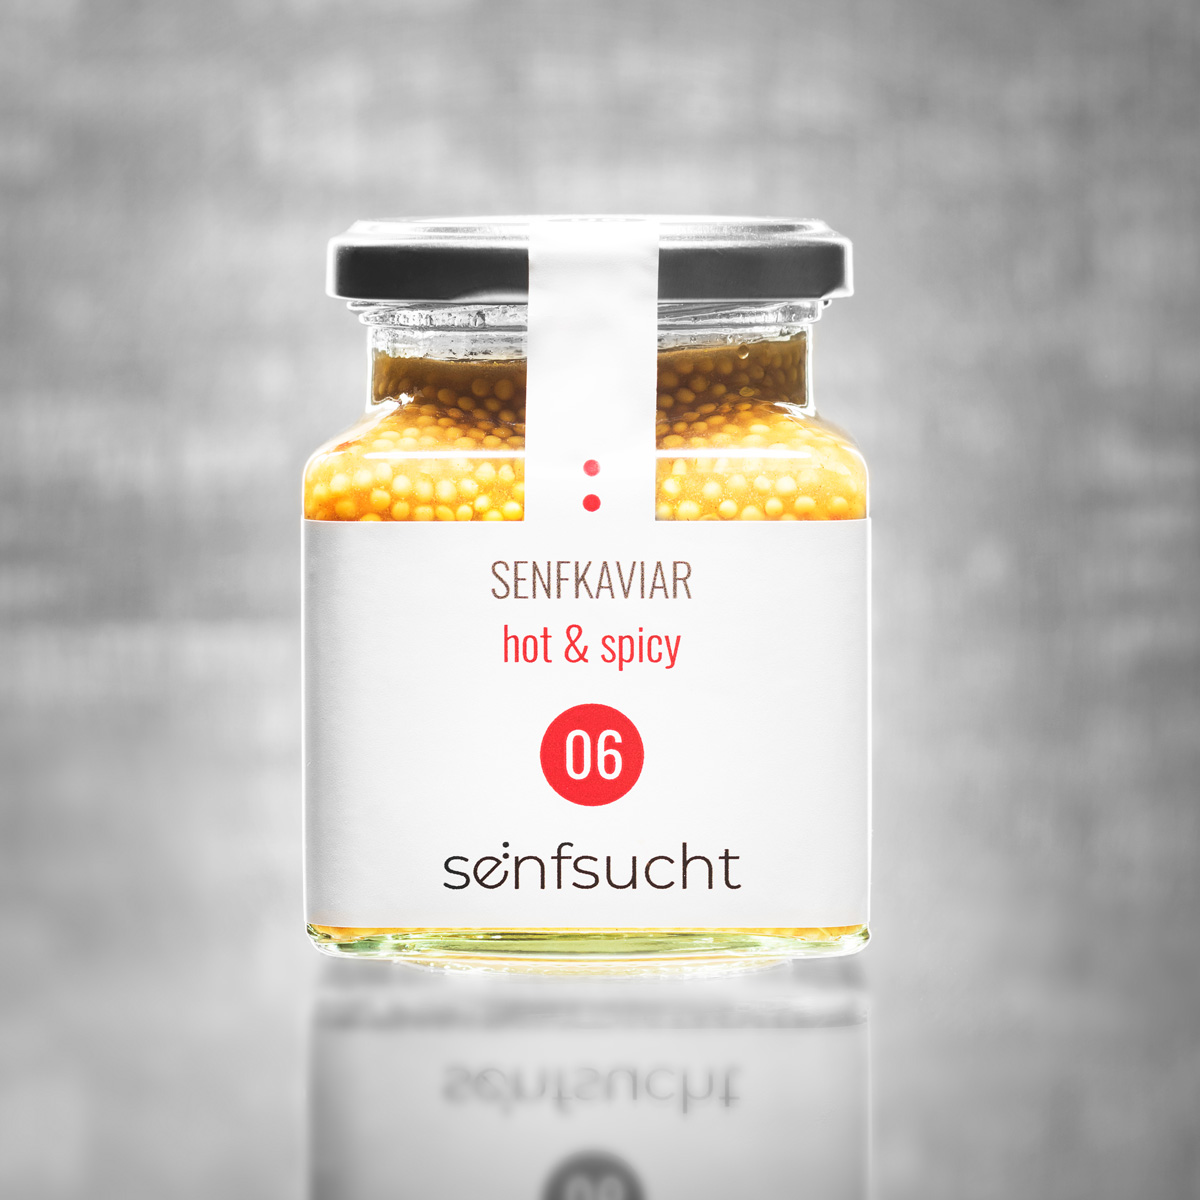 senfkaviar_hot_and_spicy_senfsucht_06-1.jpg